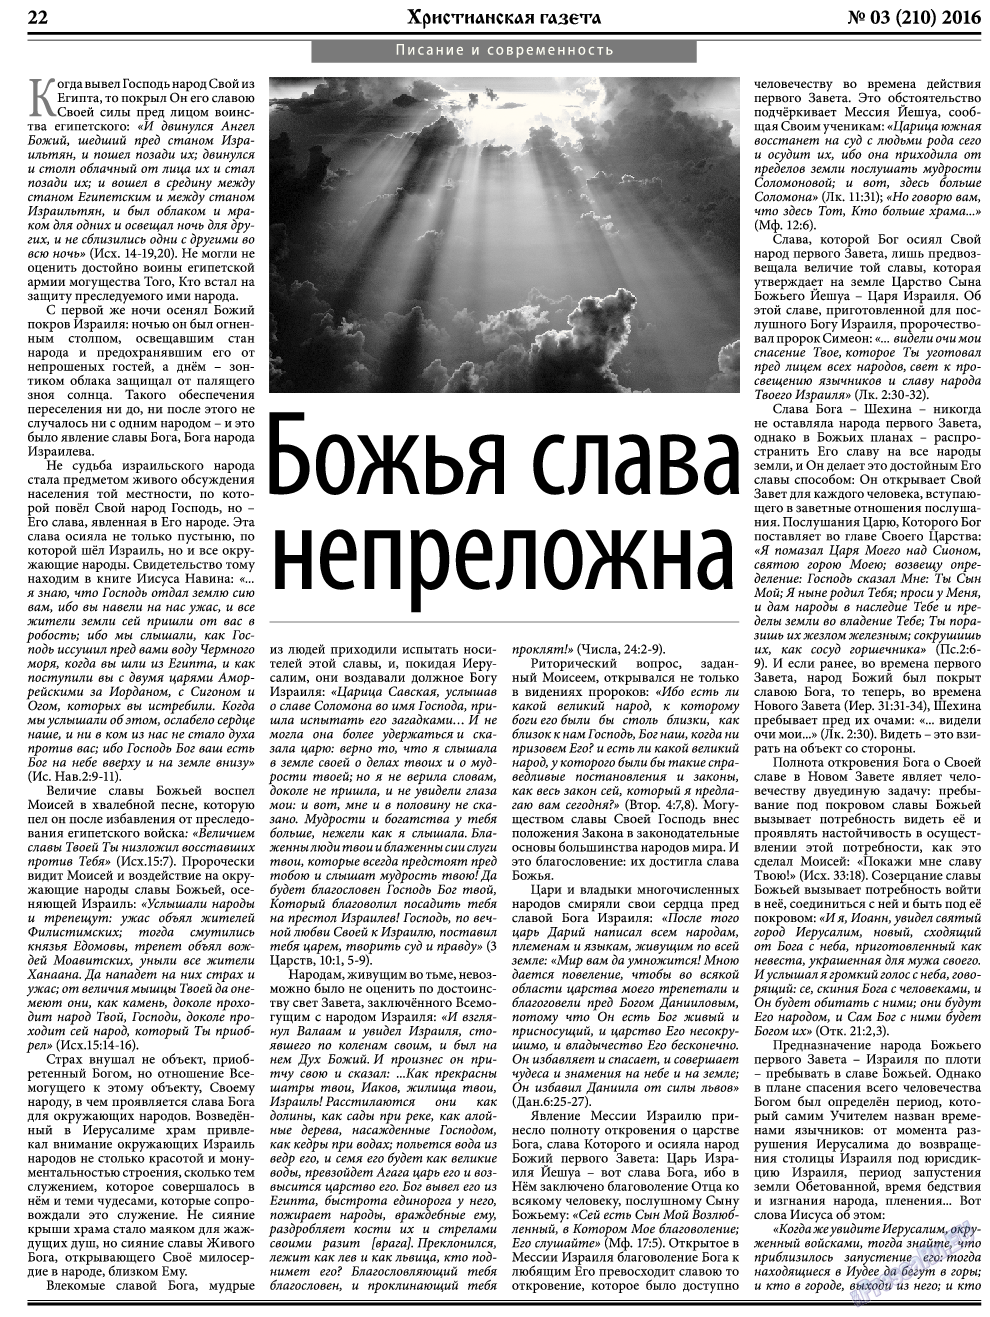 Христианская газета, газета. 2016 №3 стр.30